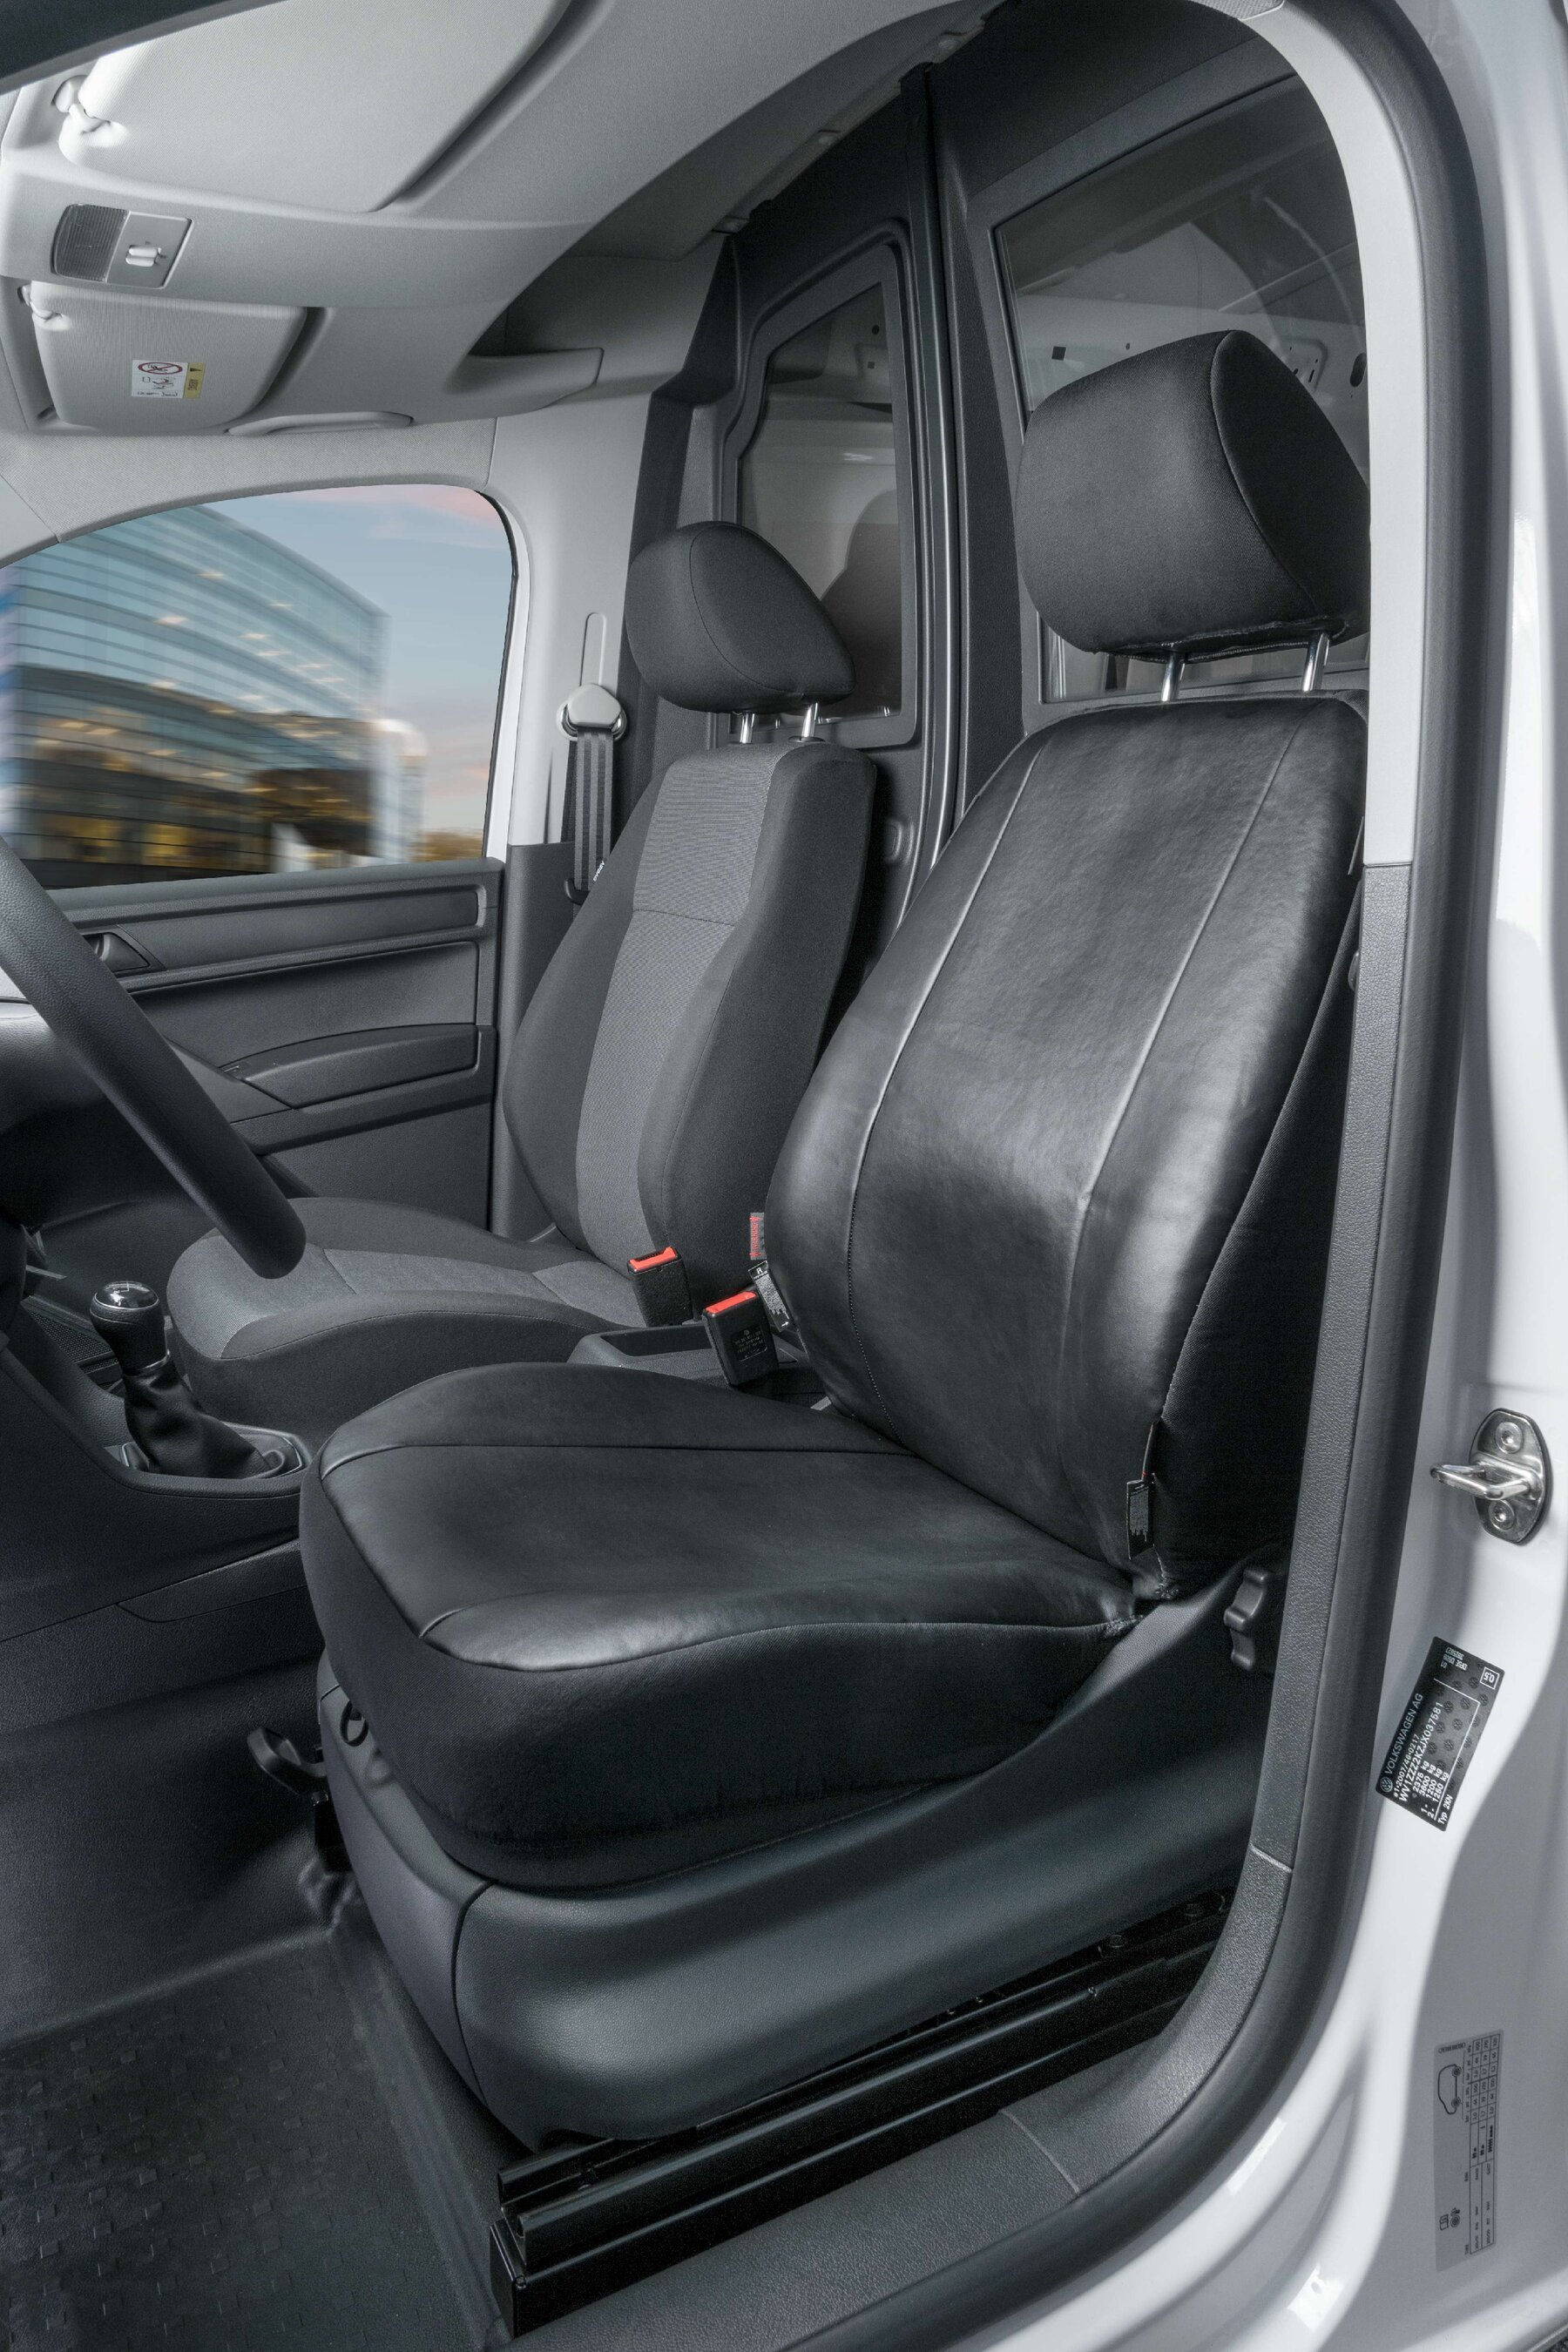 Housse de siège Transporter en simili cuir pour VW Caddy, siège avant simple